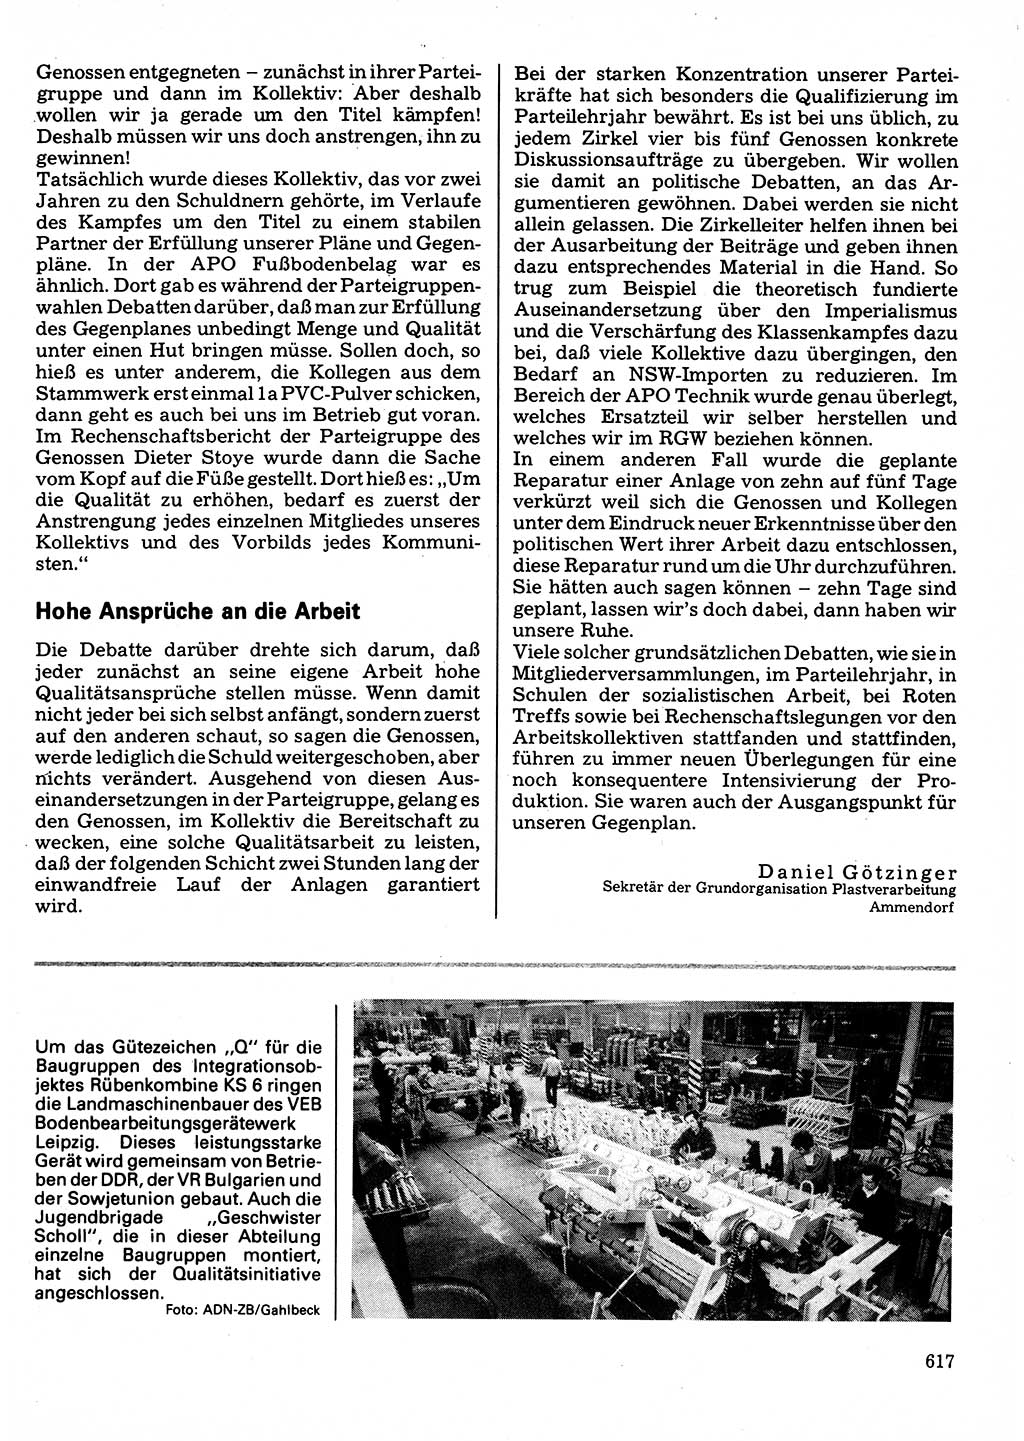 Neuer Weg (NW), Organ des Zentralkomitees (ZK) der SED (Sozialistische Einheitspartei Deutschlands) für Fragen des Parteilebens, 32. Jahrgang [Deutsche Demokratische Republik (DDR)] 1977, Seite 617 (NW ZK SED DDR 1977, S. 617)